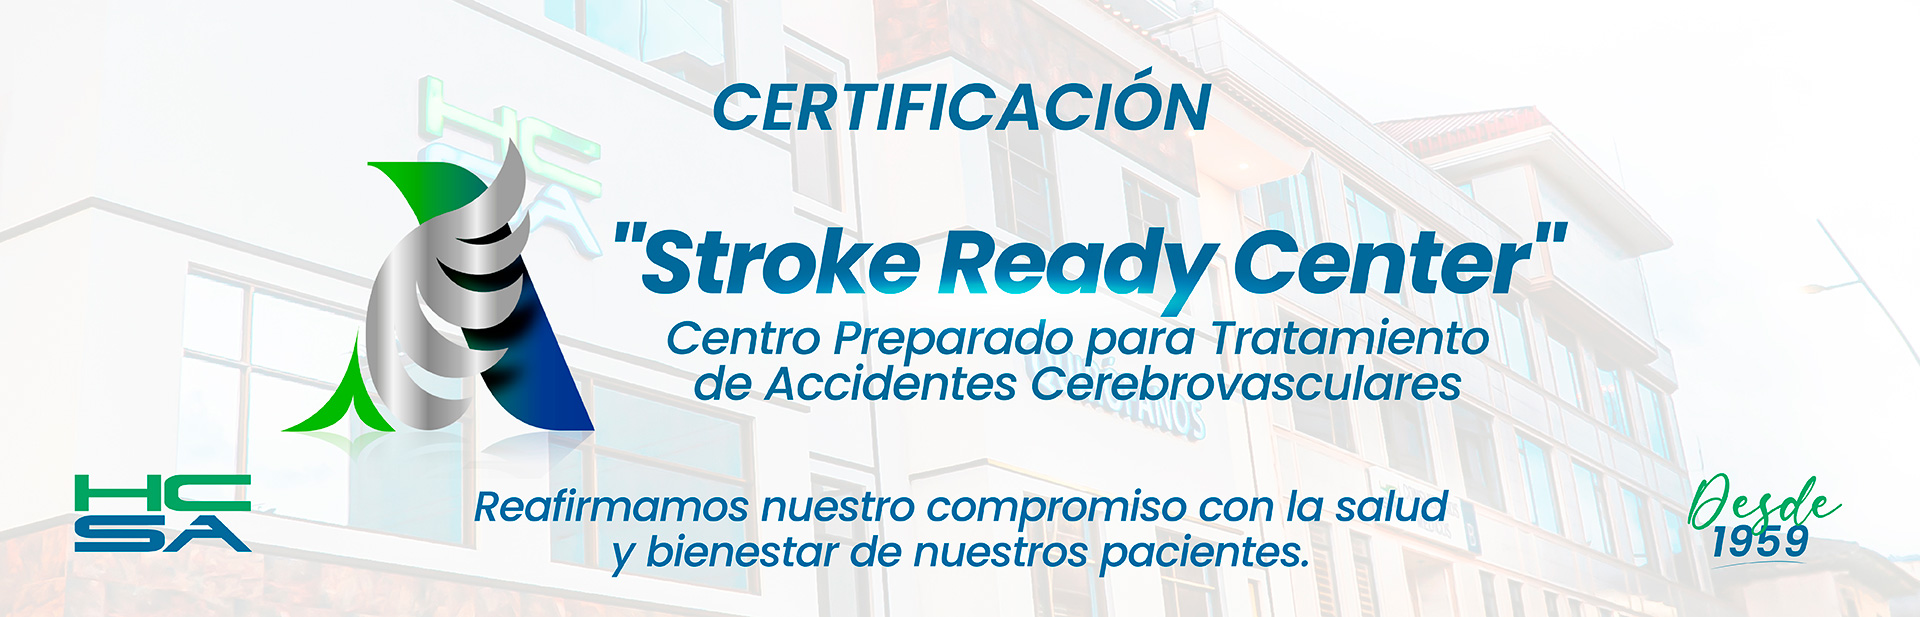 Stroke Ready Center | Hospital Clínica San Agustín